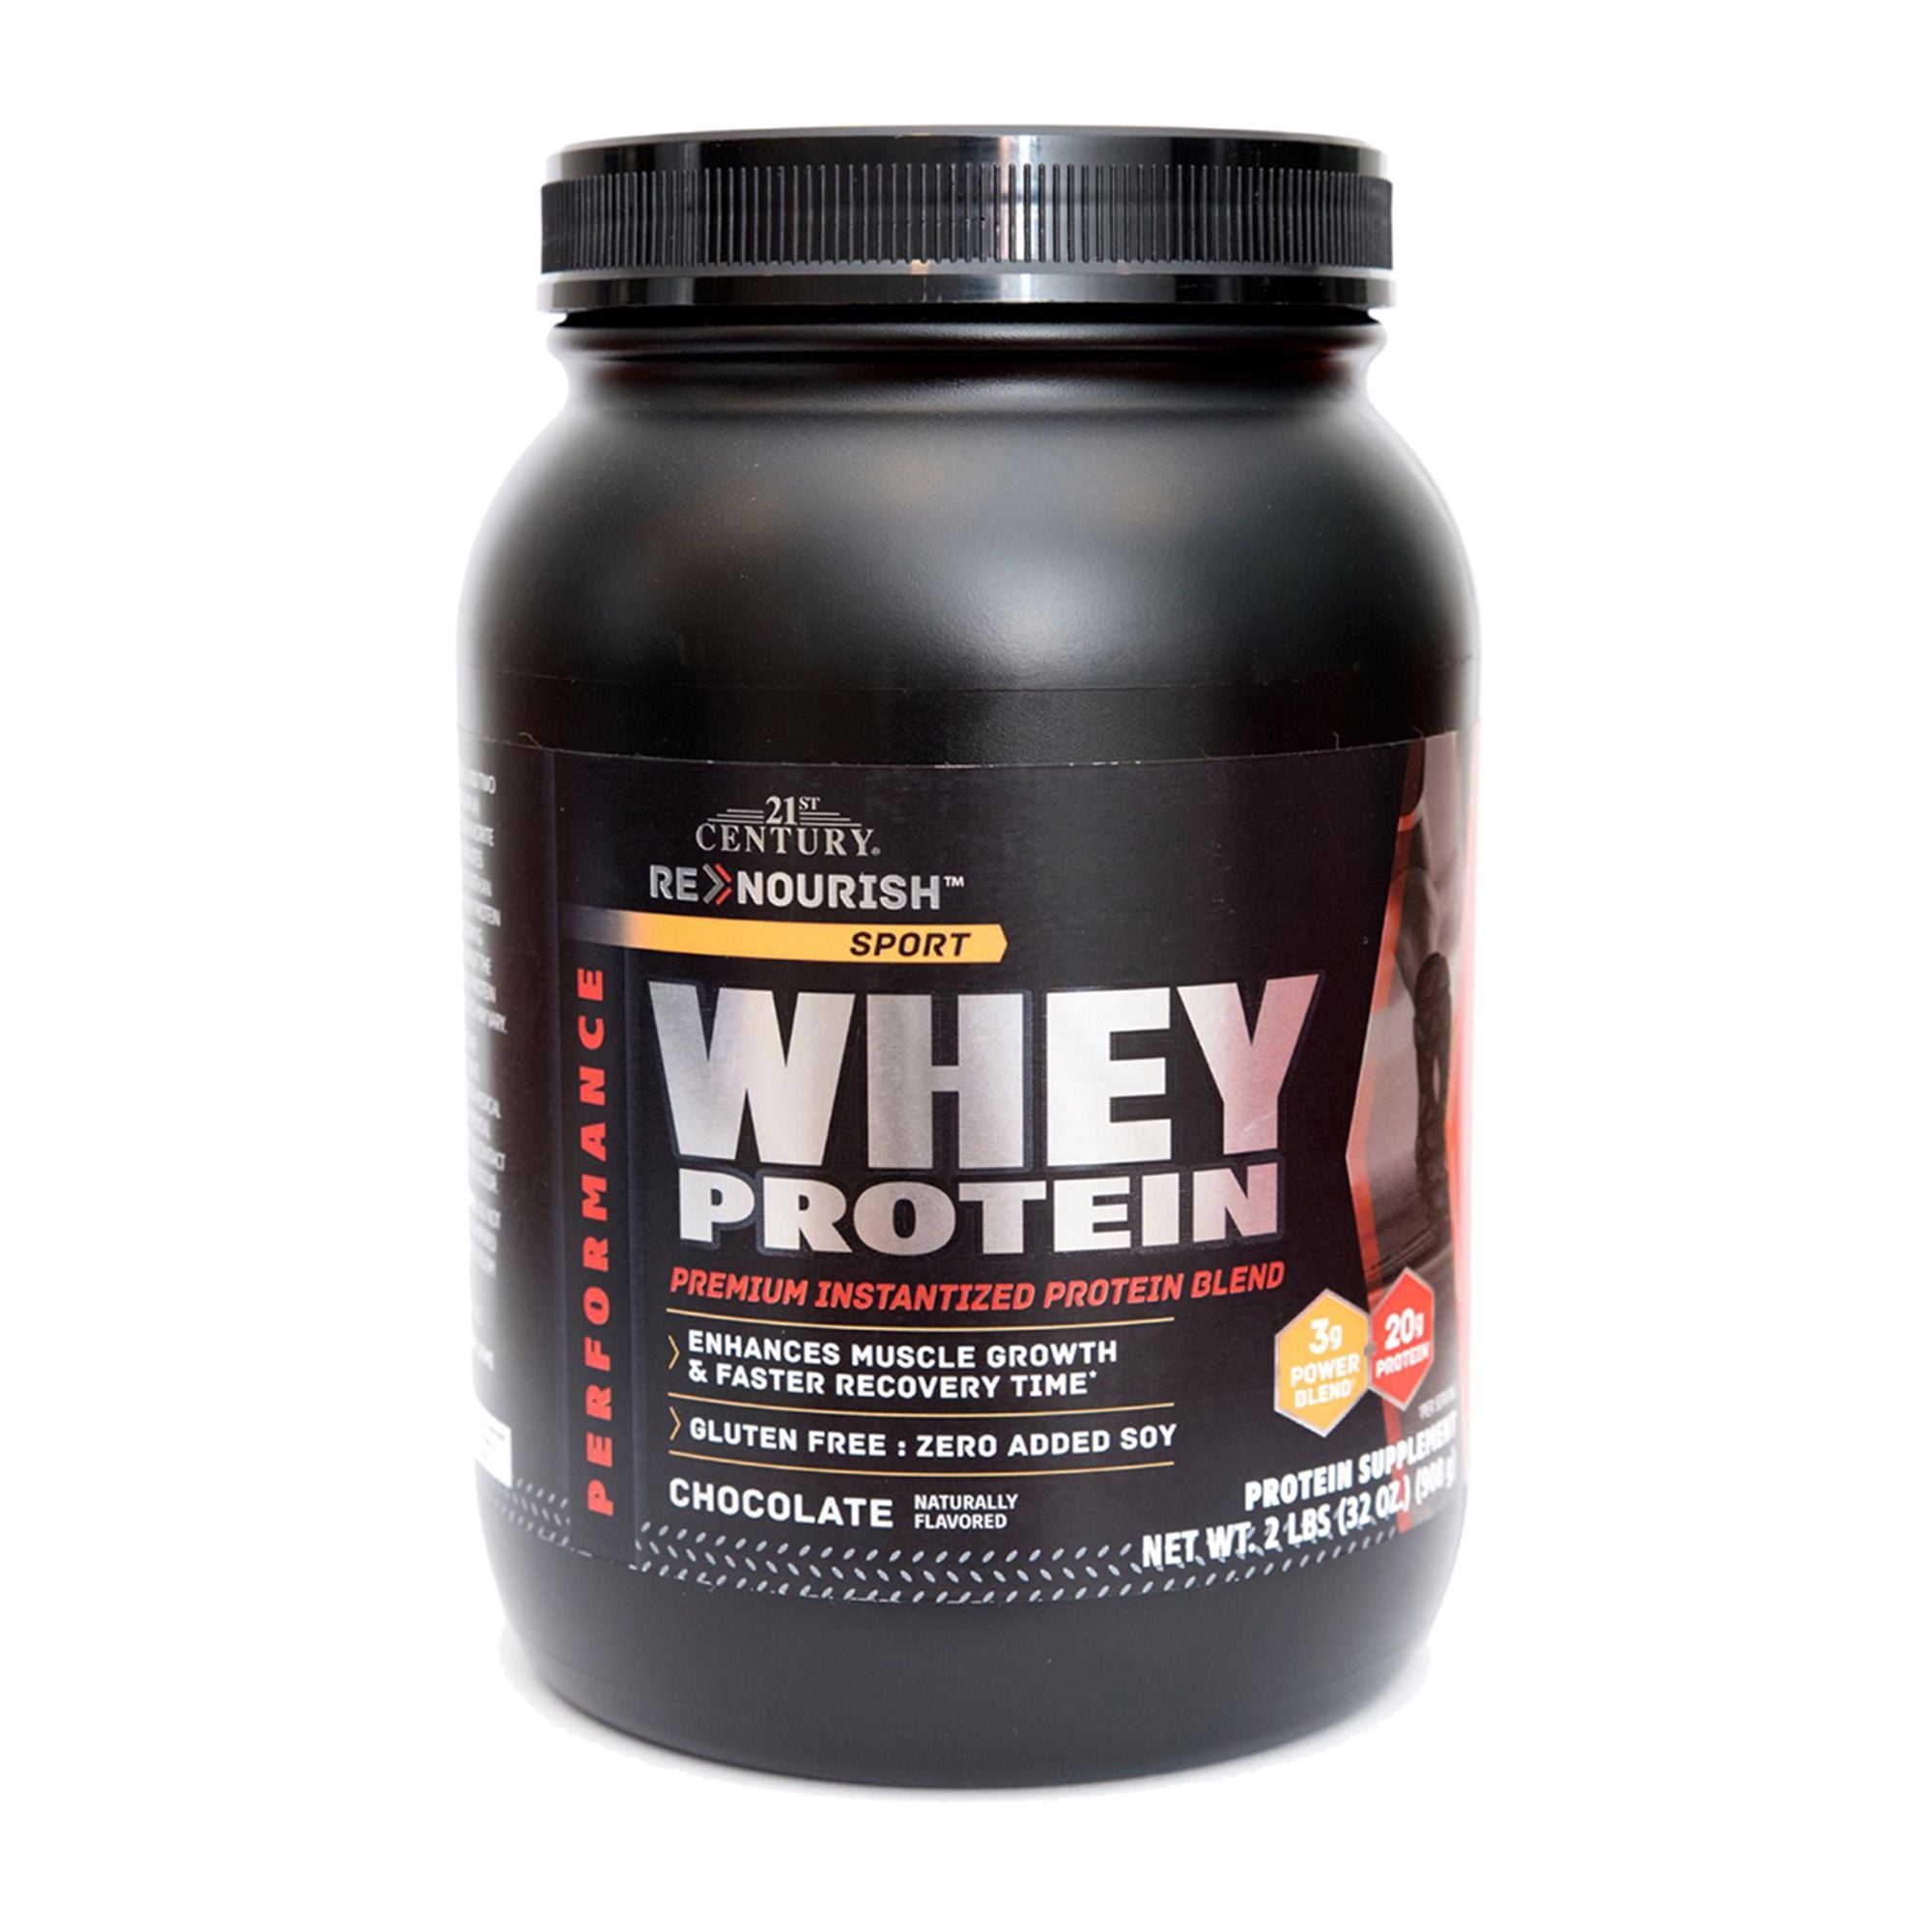 21ST CENTURY Whey Protein Premium Instantized Protein Blend 908g